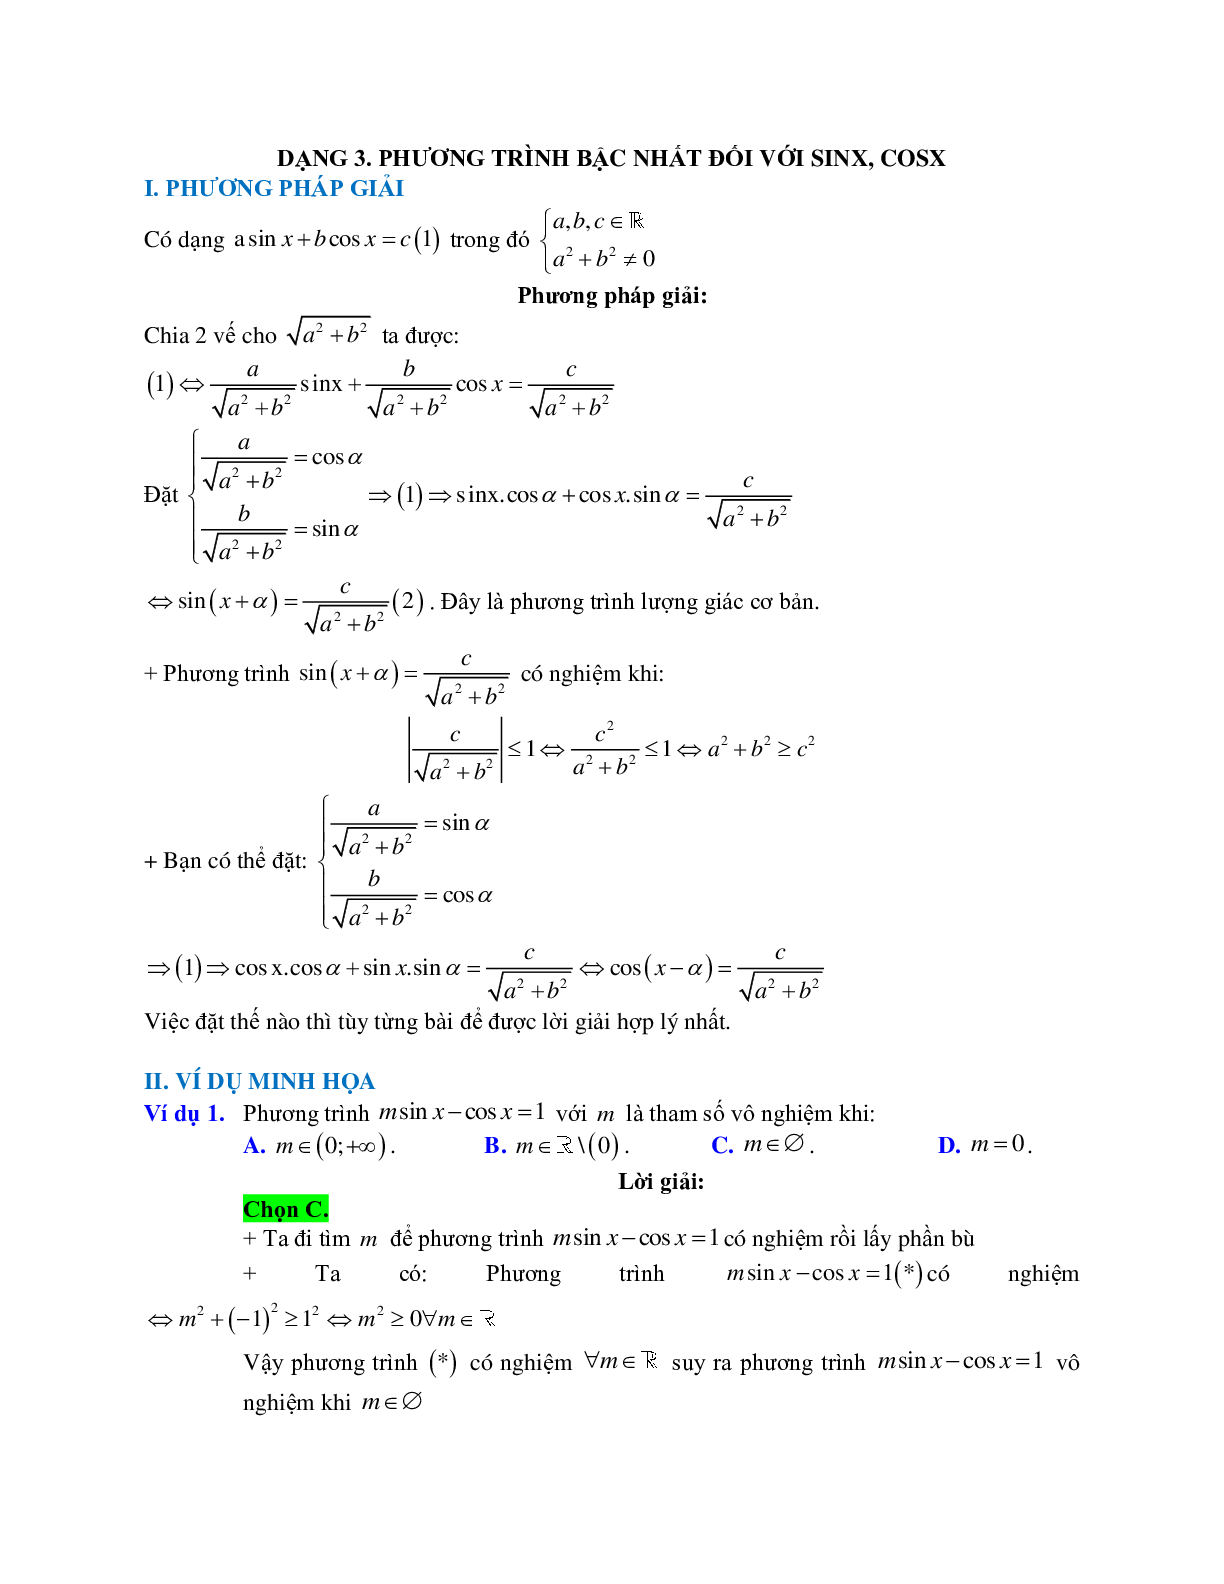 Cách giải phương trình bậc nhất đối với sinx, cosx (trang 1)